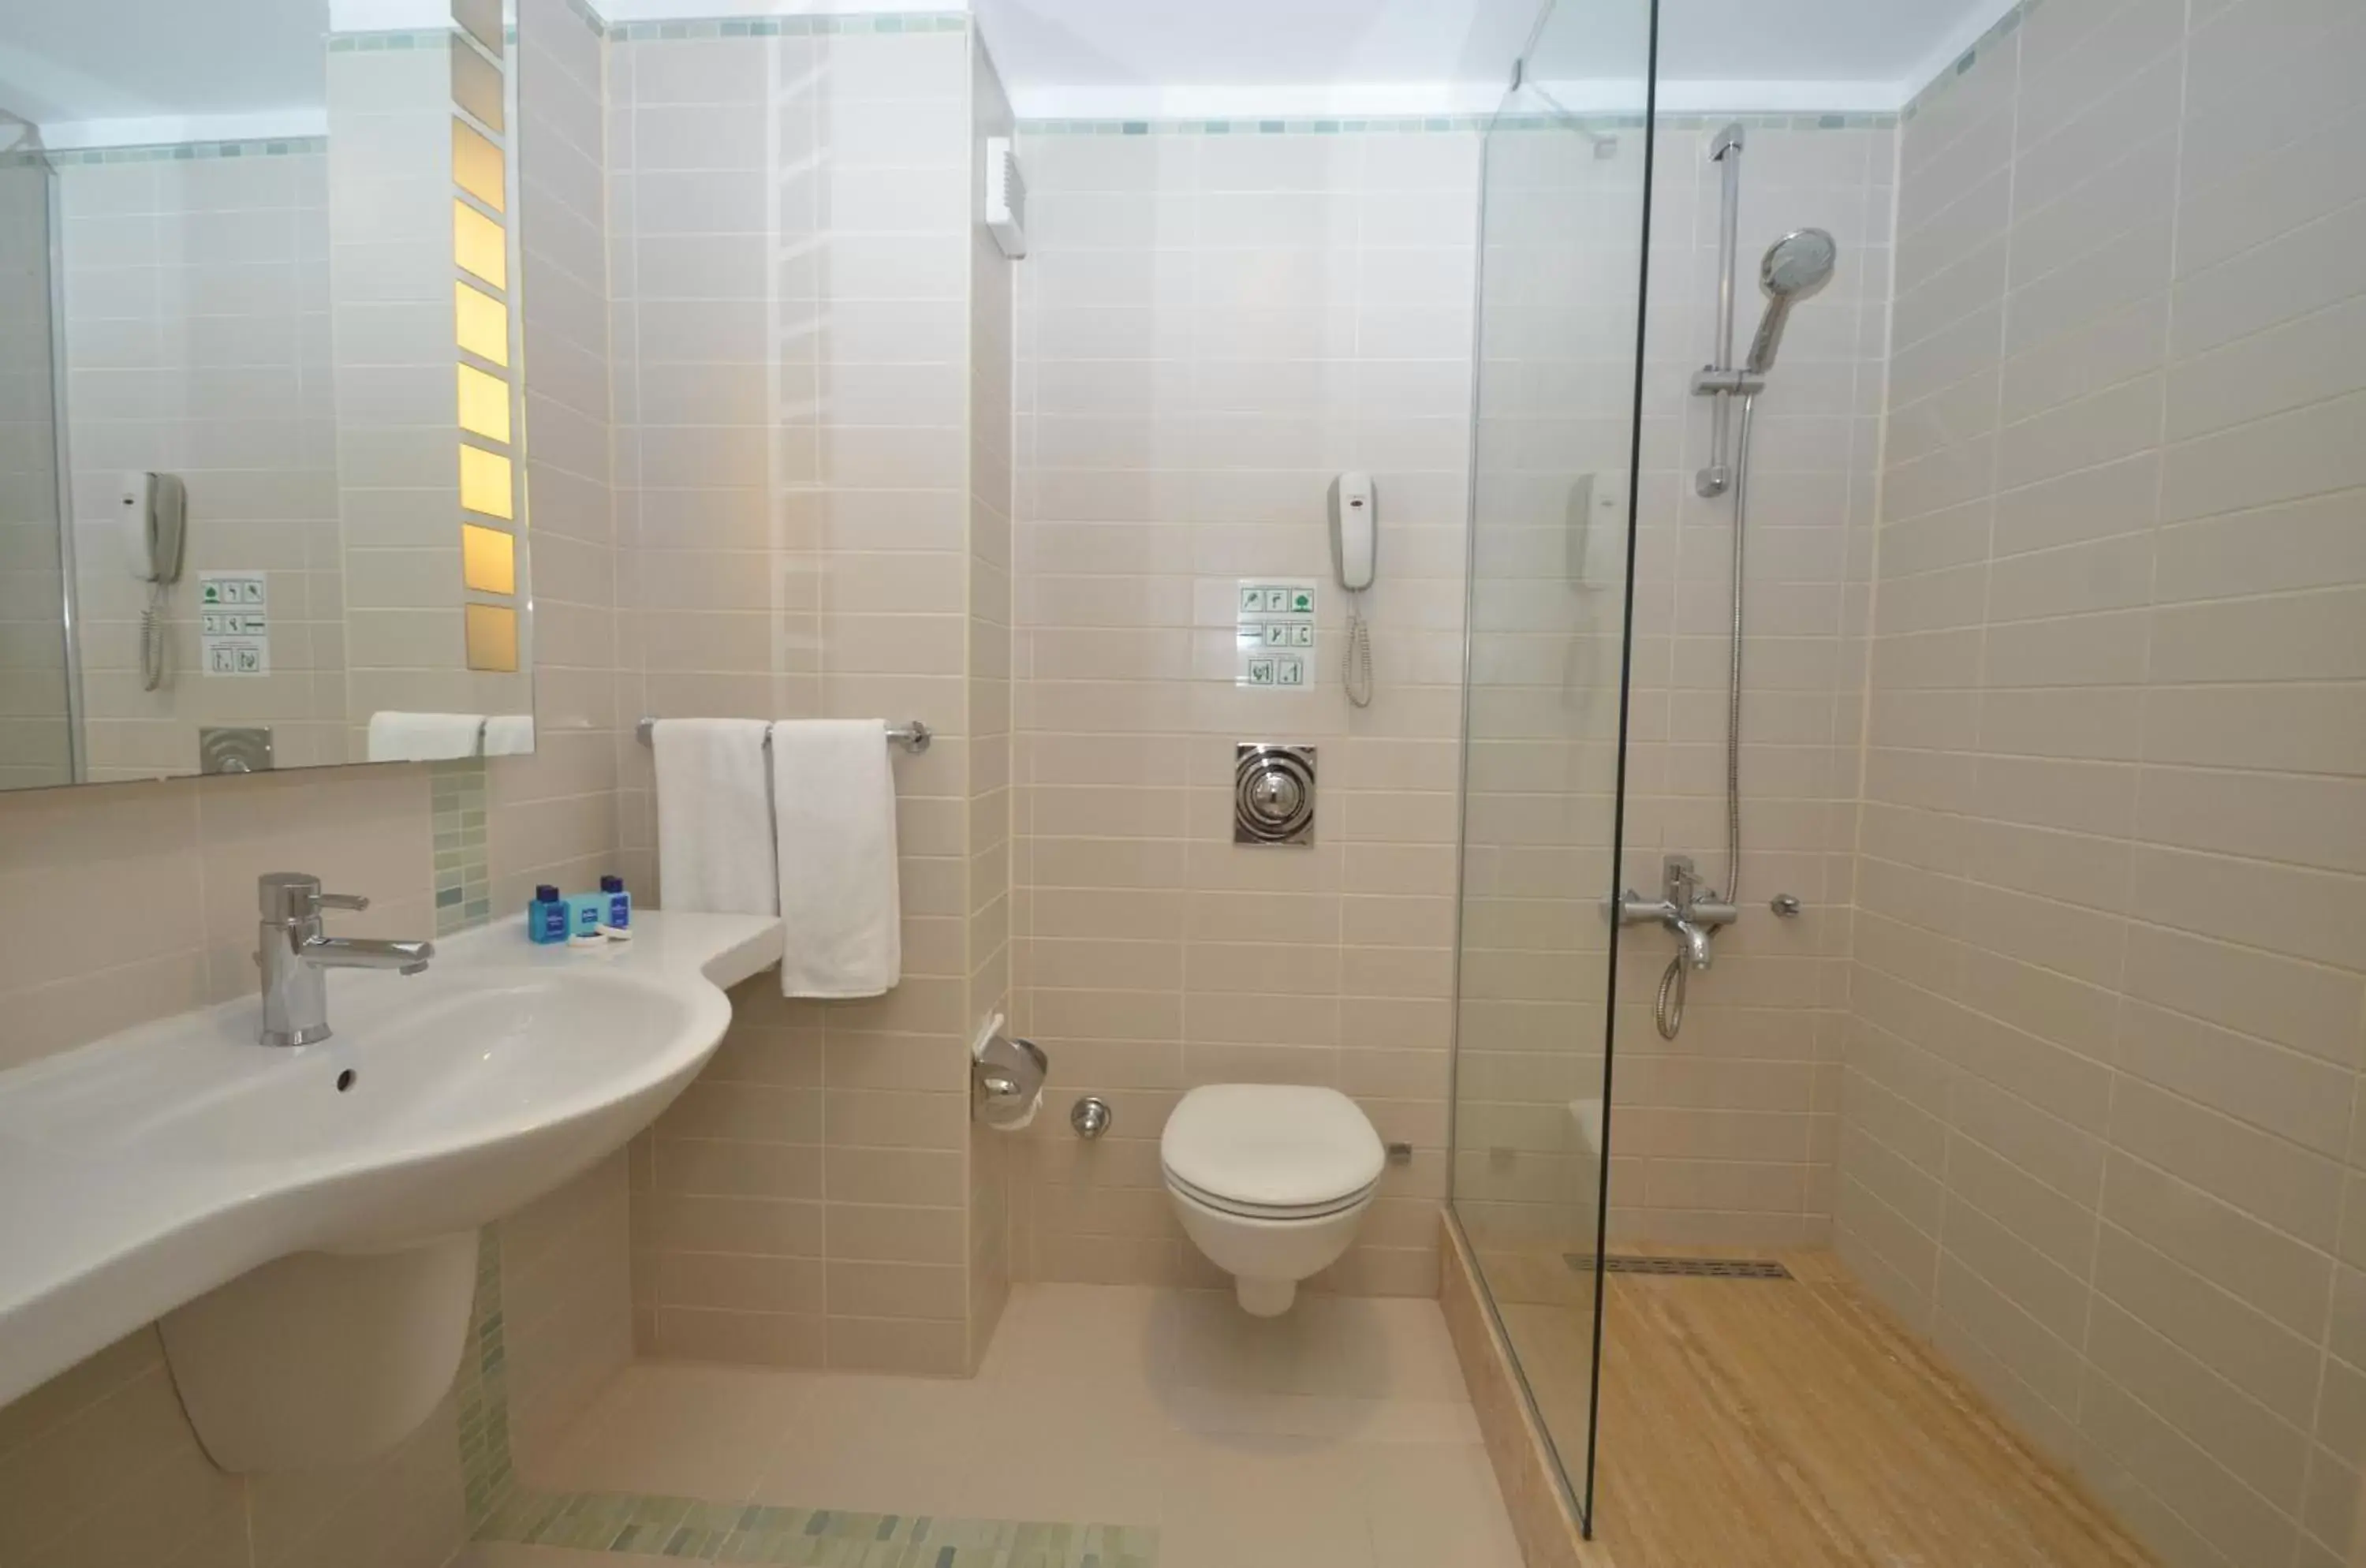 Bathroom in La Blanche Resort & Spa